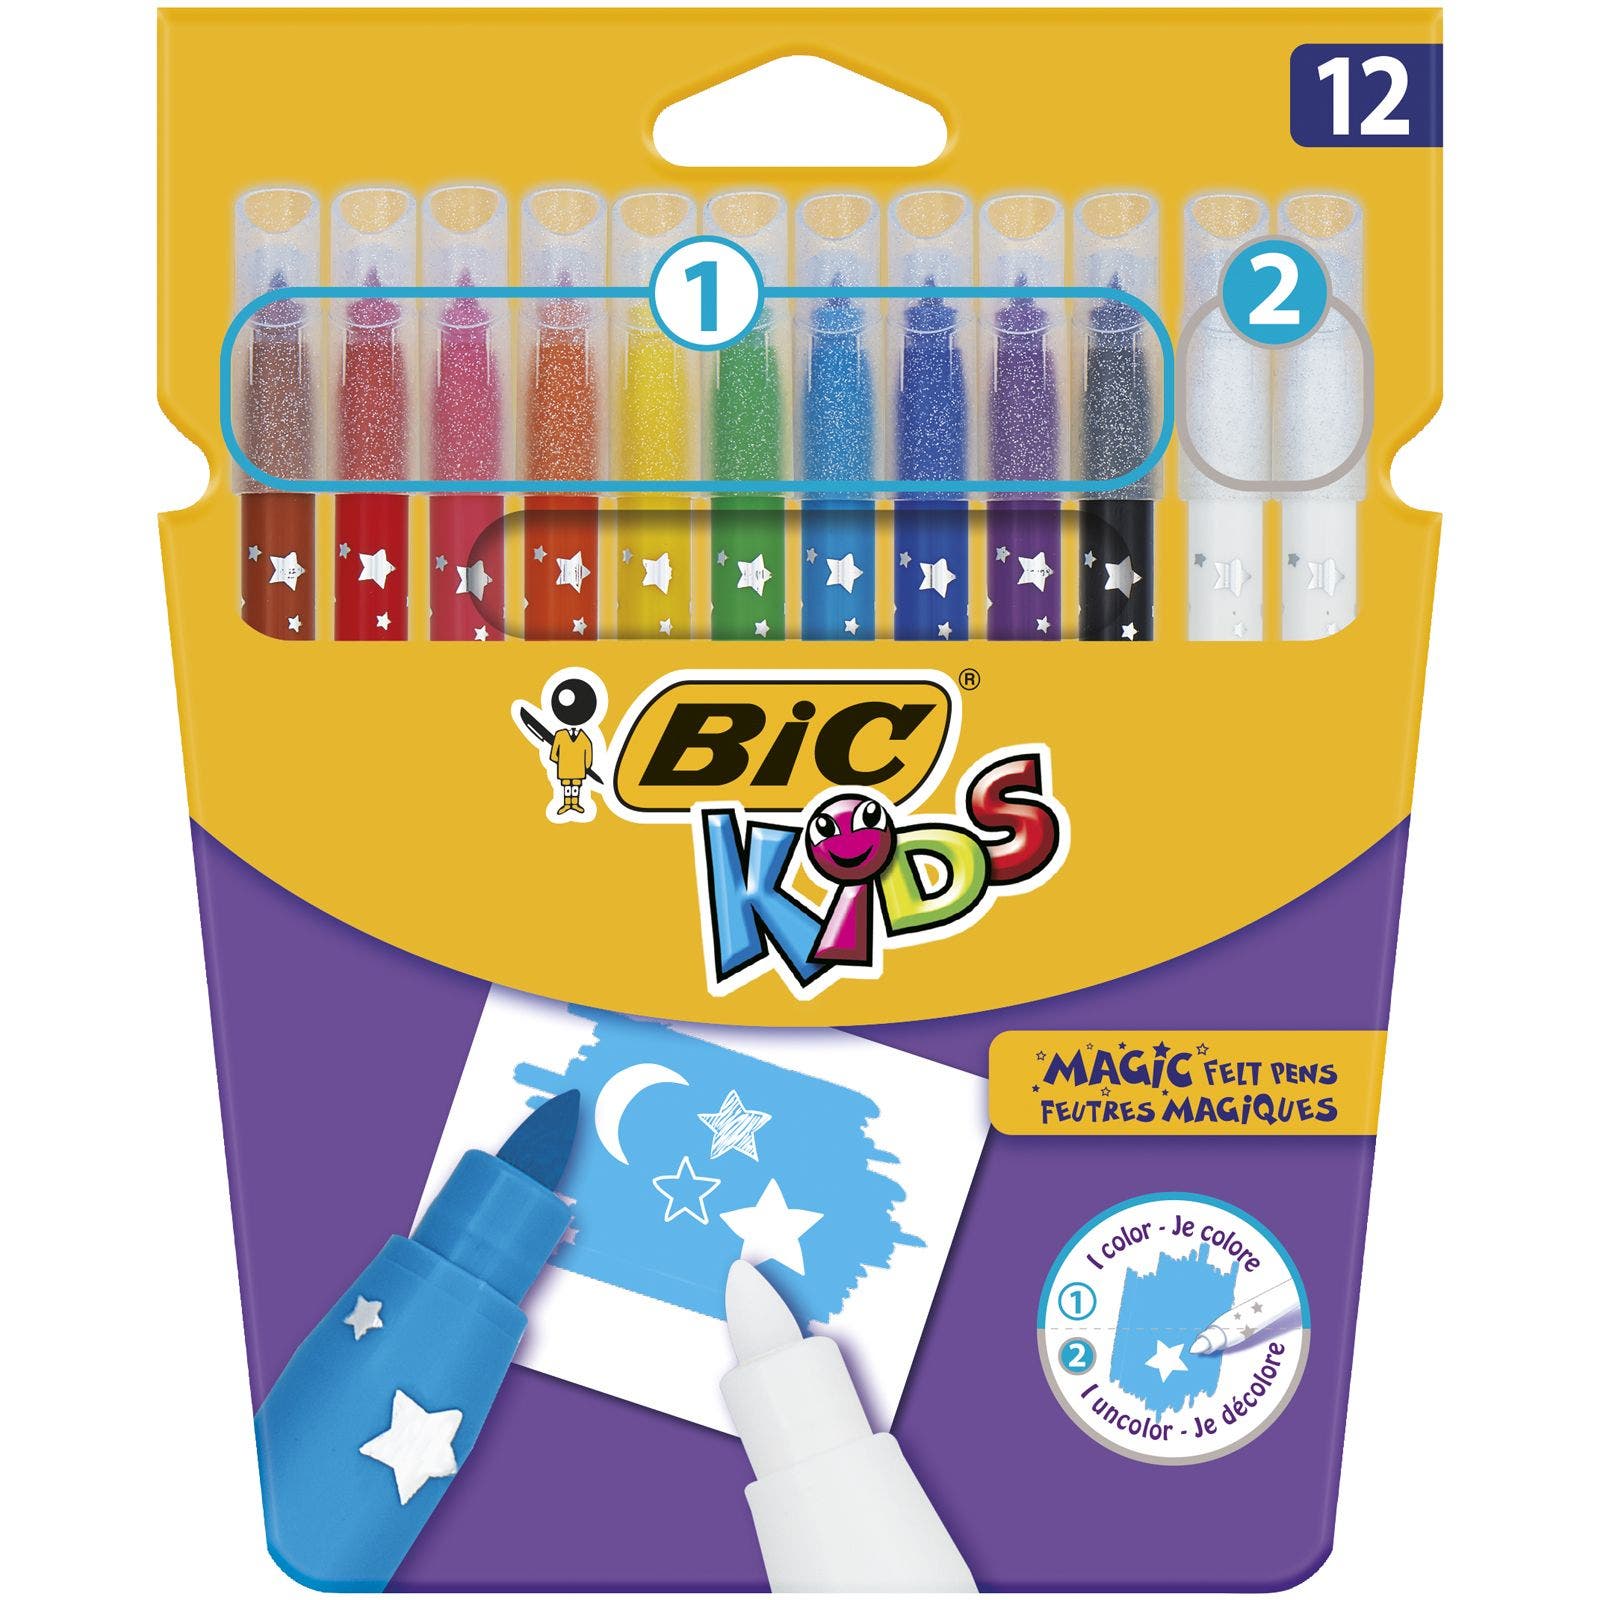 BIC Kids-Magic feutres-Pack de 12 stylos Stocking Filler Neuf/Scellé L @ @ K! 